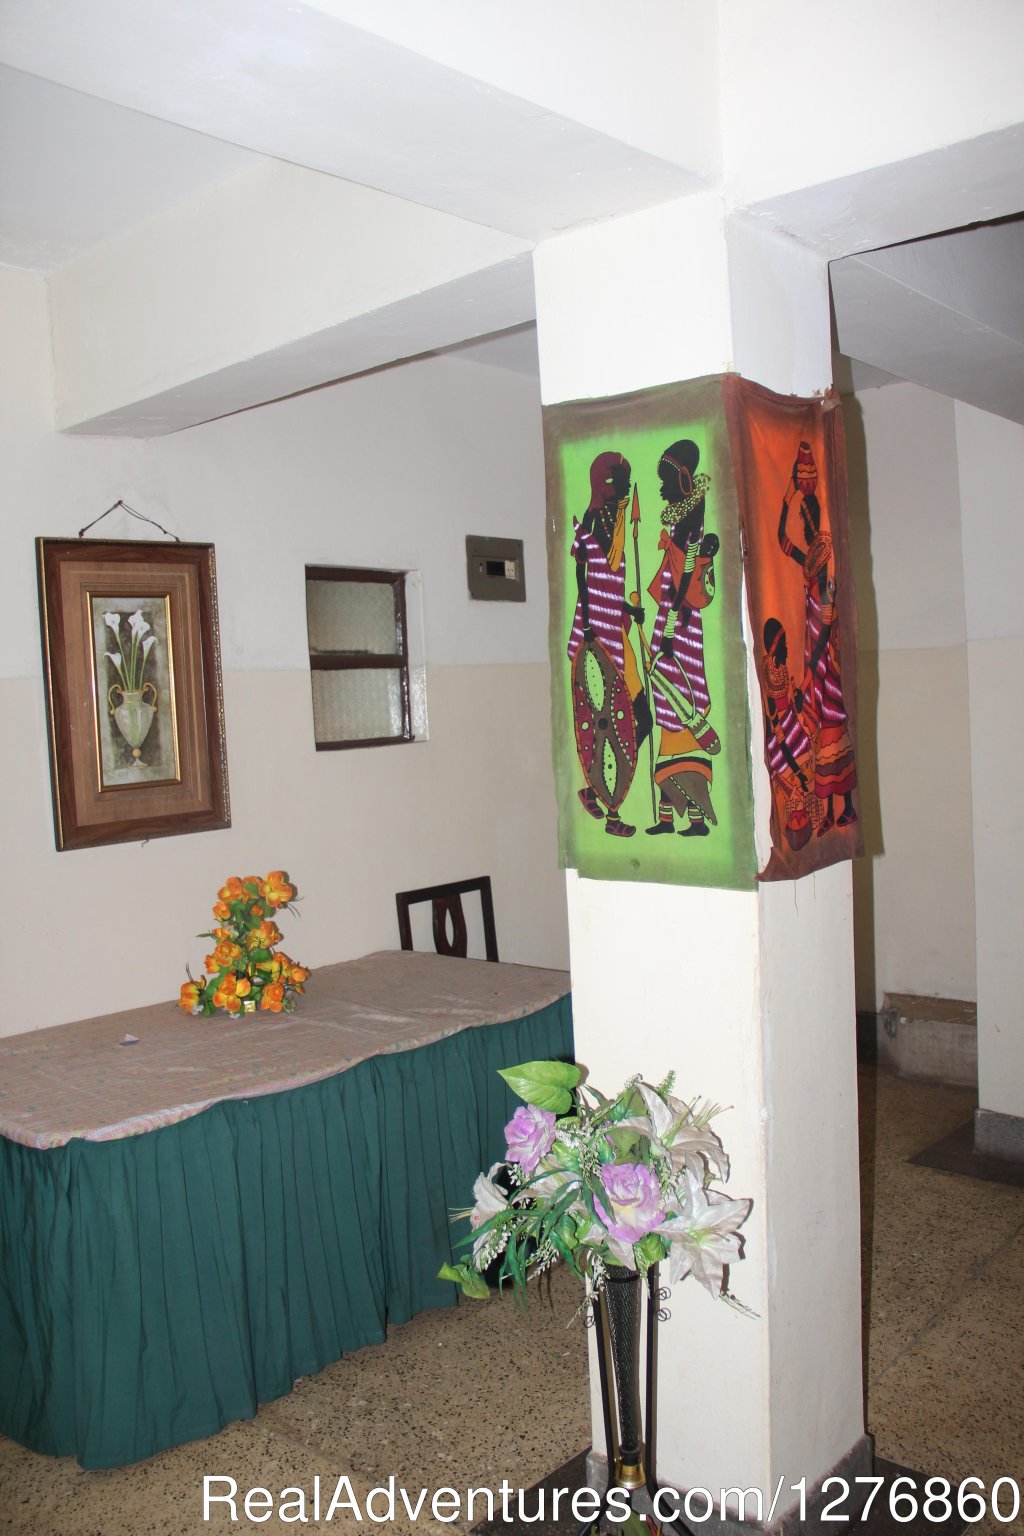 Hotels Hall way | Vacation Rental Apartment and Hotel. Kisumu,Kenya | Image #18/19 | 